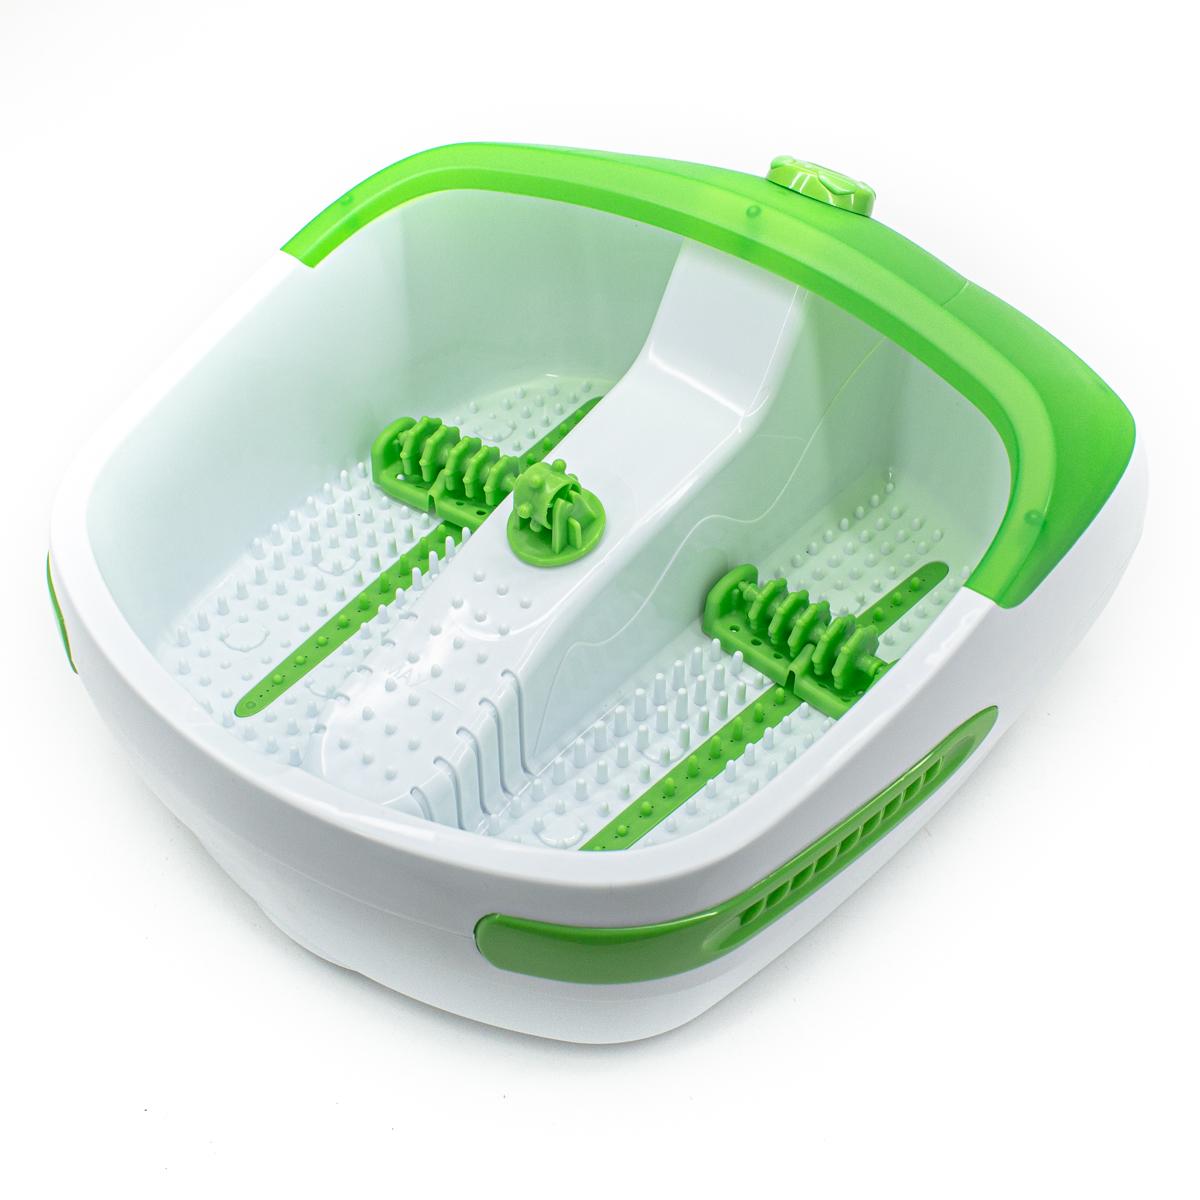 Гидромассажная ванна для ног FM-HT001 Технологии здоровья